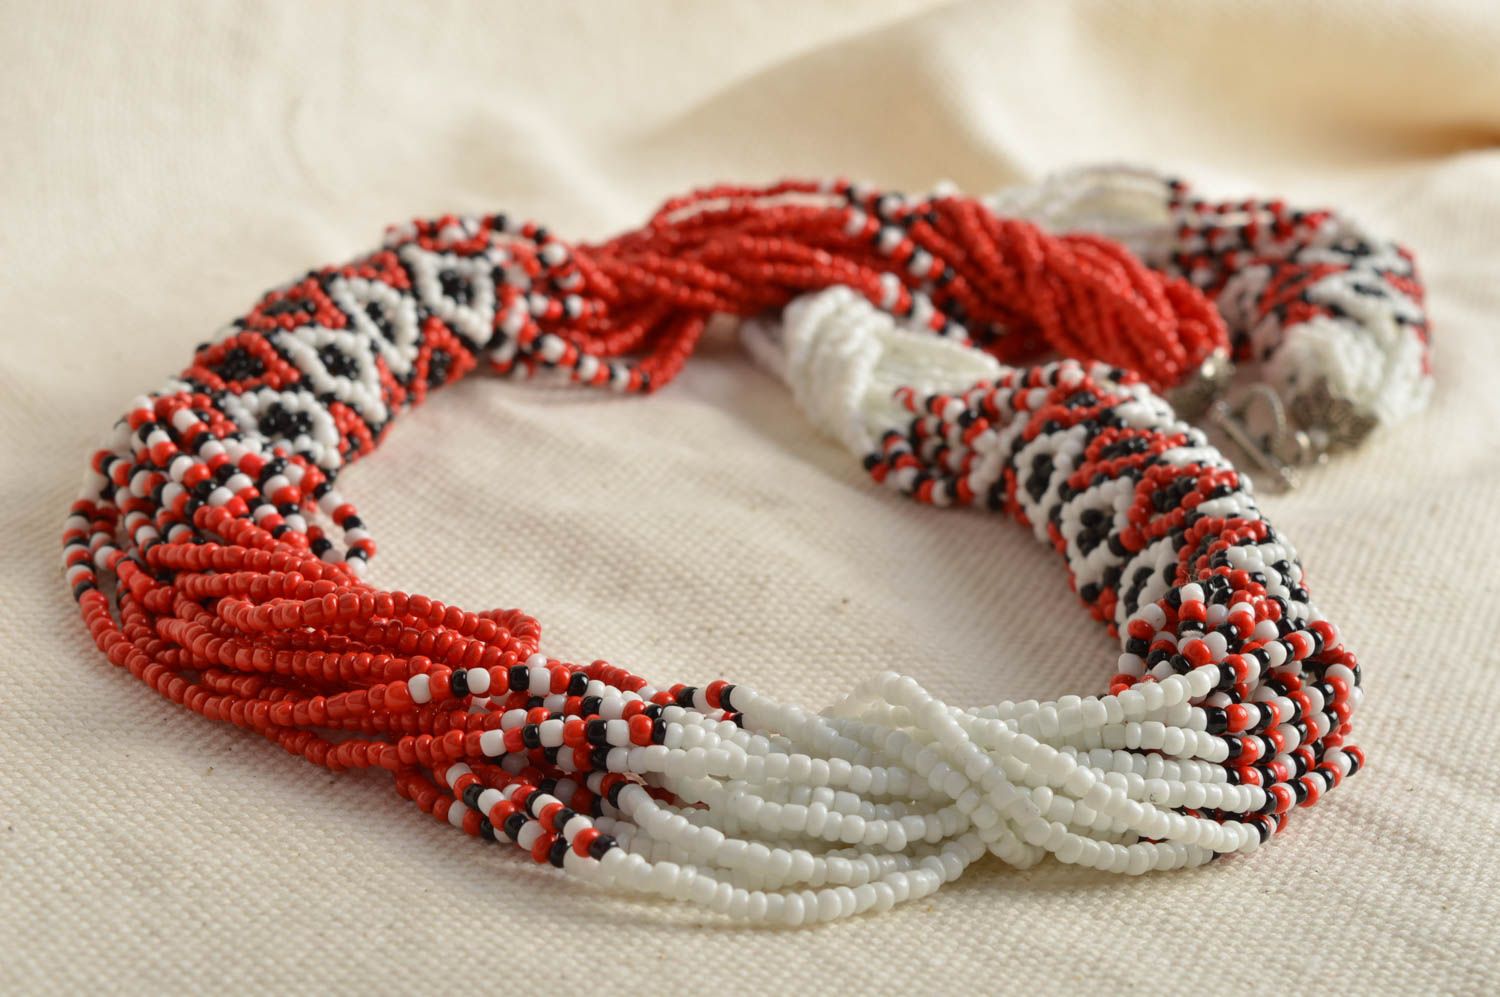 Ожерелье из бисера в виде жгута белое с красным и черным красивое ручной работы фото 1